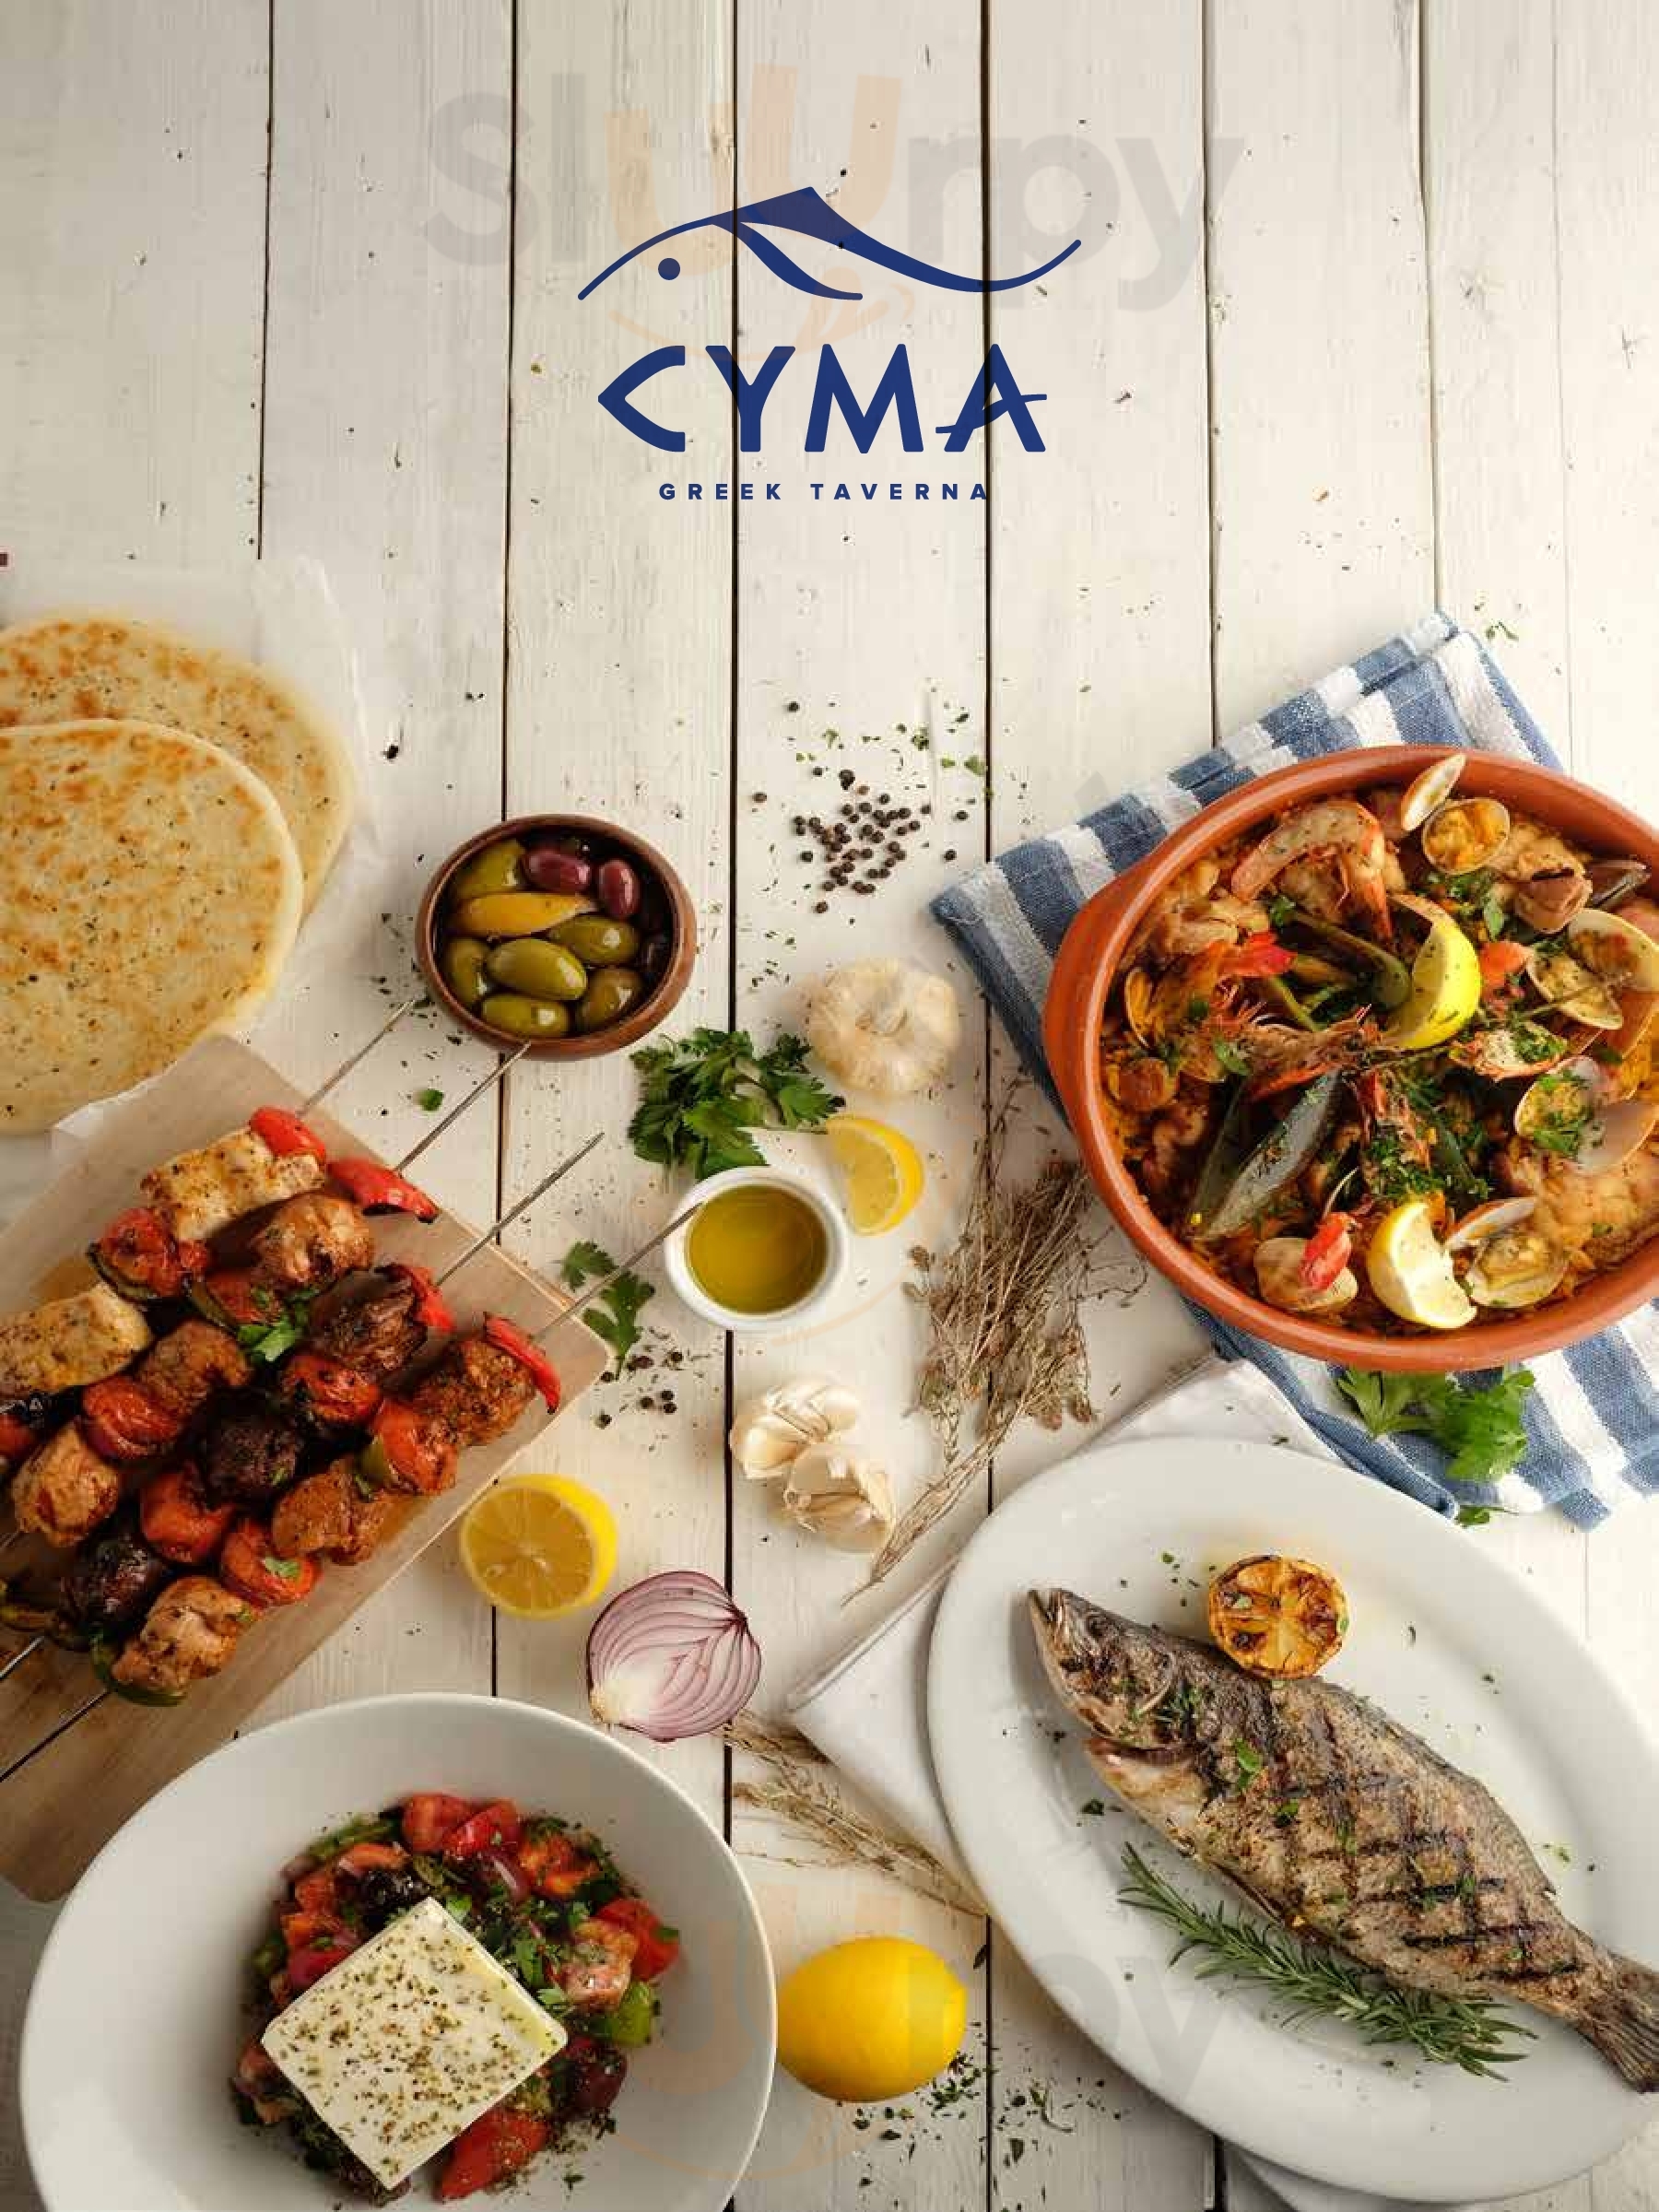 Cyma Greek Taverna Philippines Menu - 1